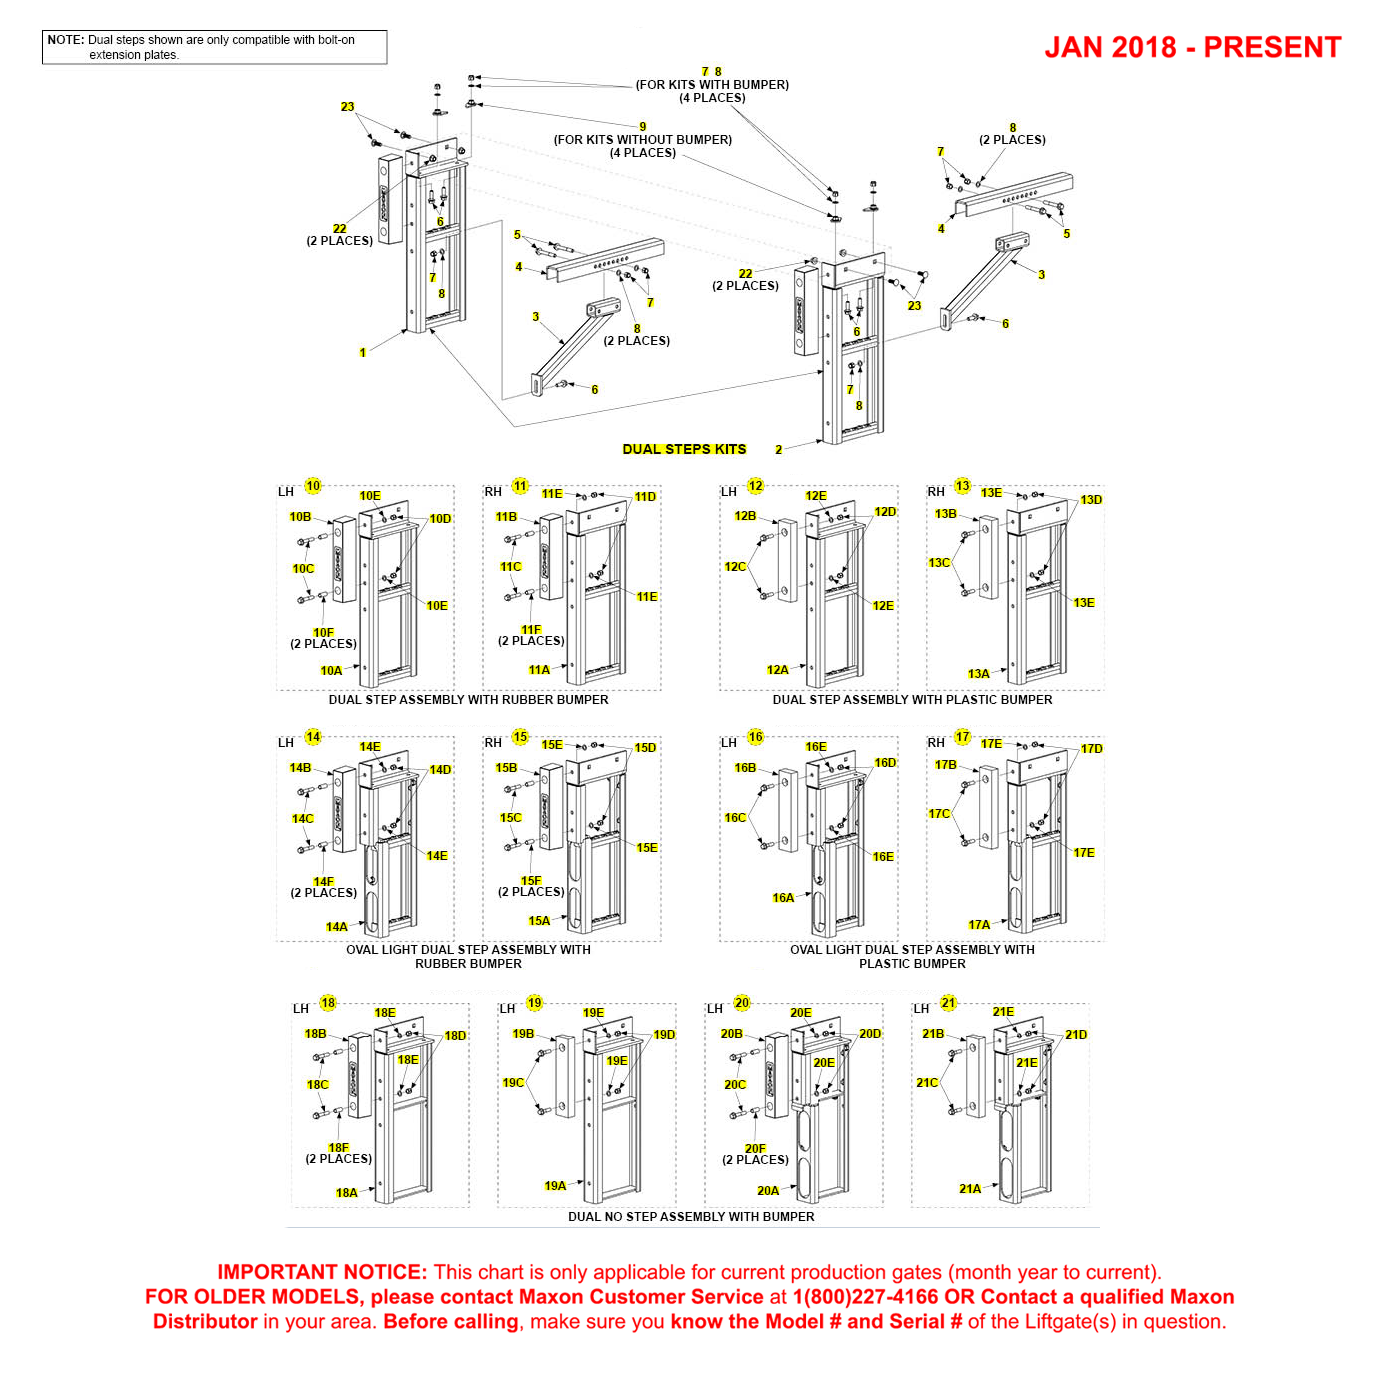 Maxon TE-15 And TE-20 (Jan 2018 - Present) Dual Step Kit Diagram